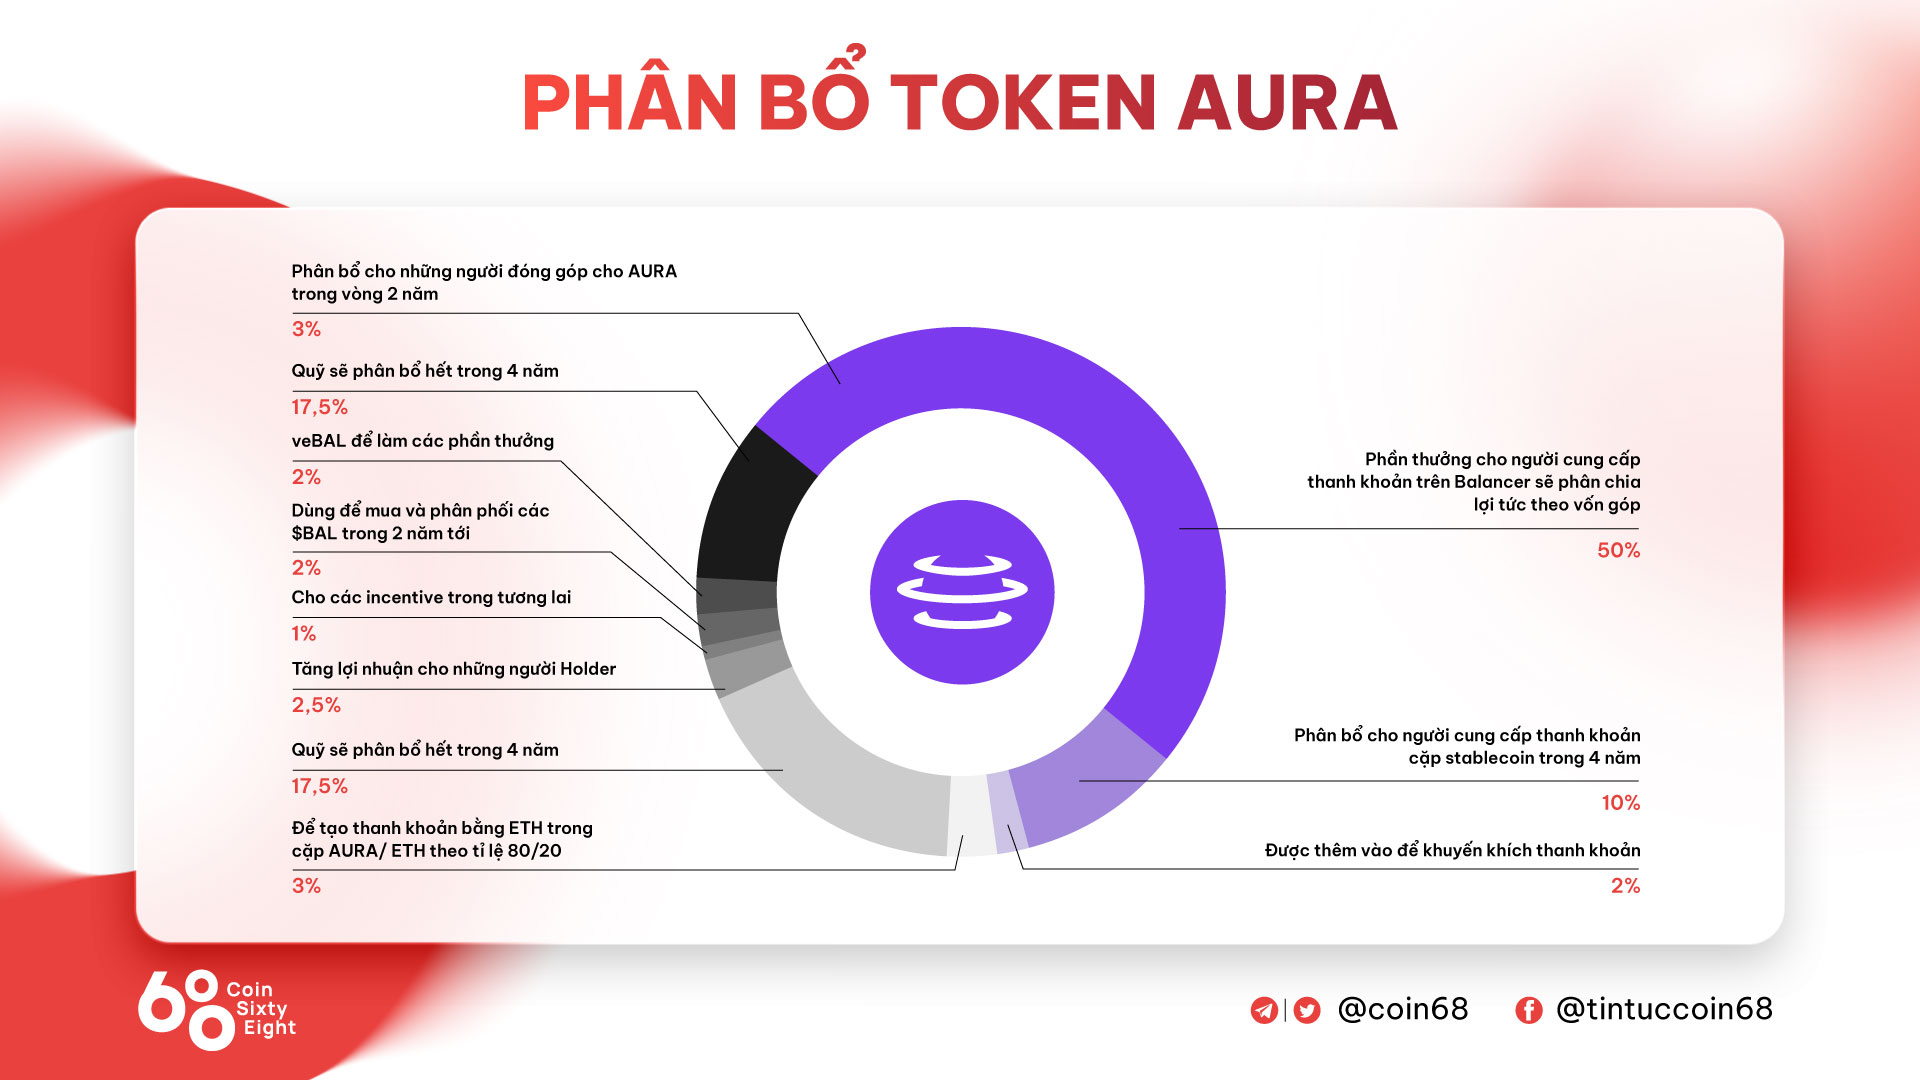 Distribución de tokens AURA